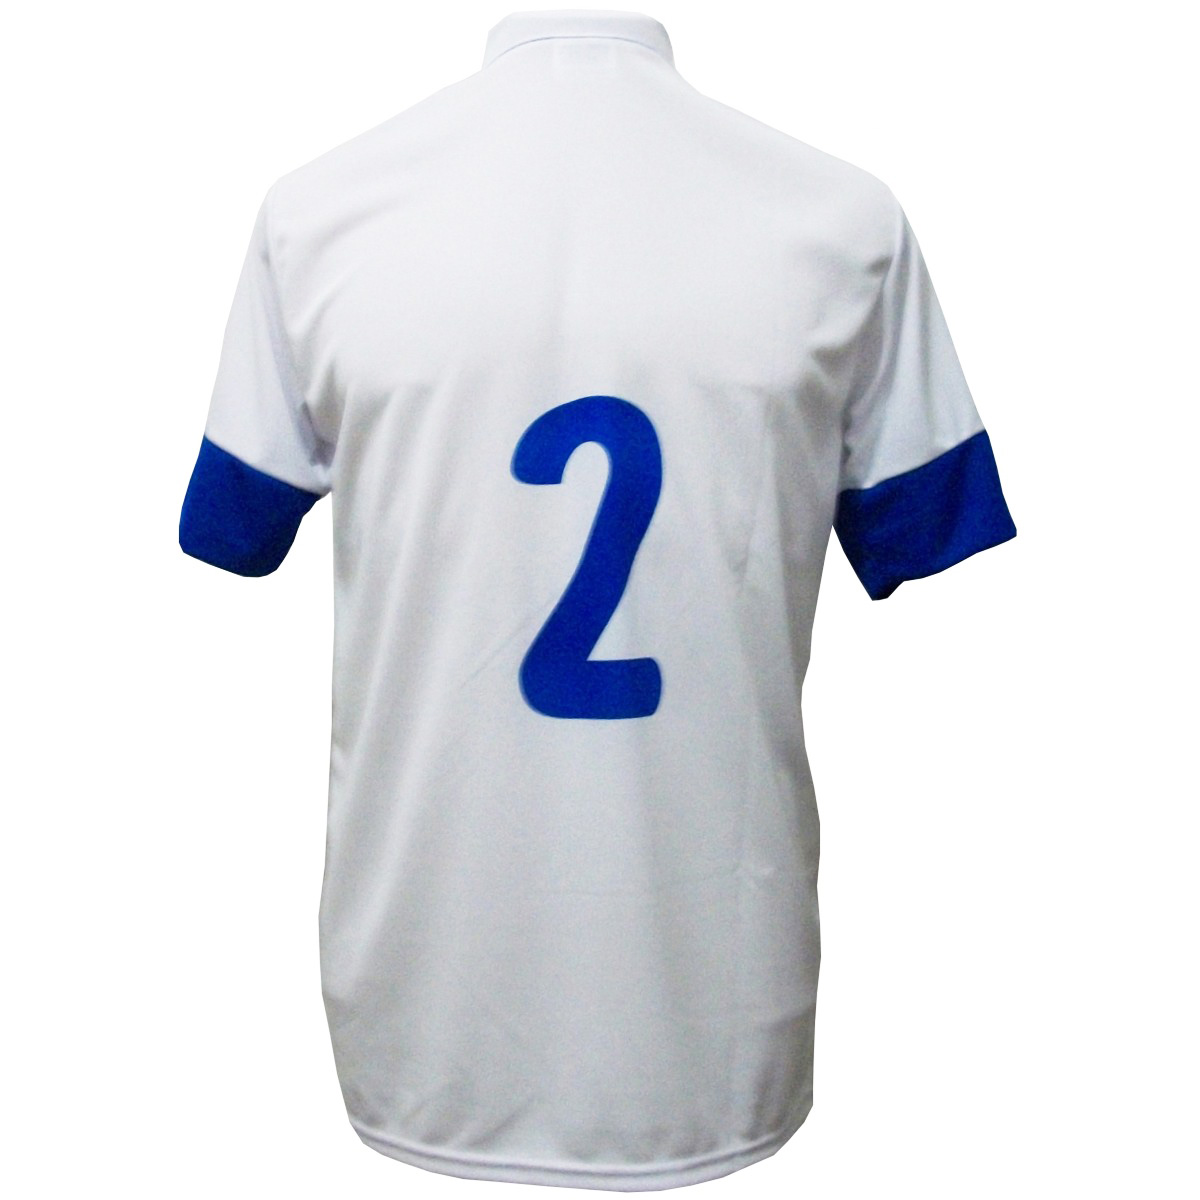 Uniforme Esportivo Completo modelo Sporting 14+1 (14 camisas Branco/Royal + 14 calções modelo Copa Royal/Branco + 14 pares de meiões Royal + 1 conjunto de goleiro) + Brindes